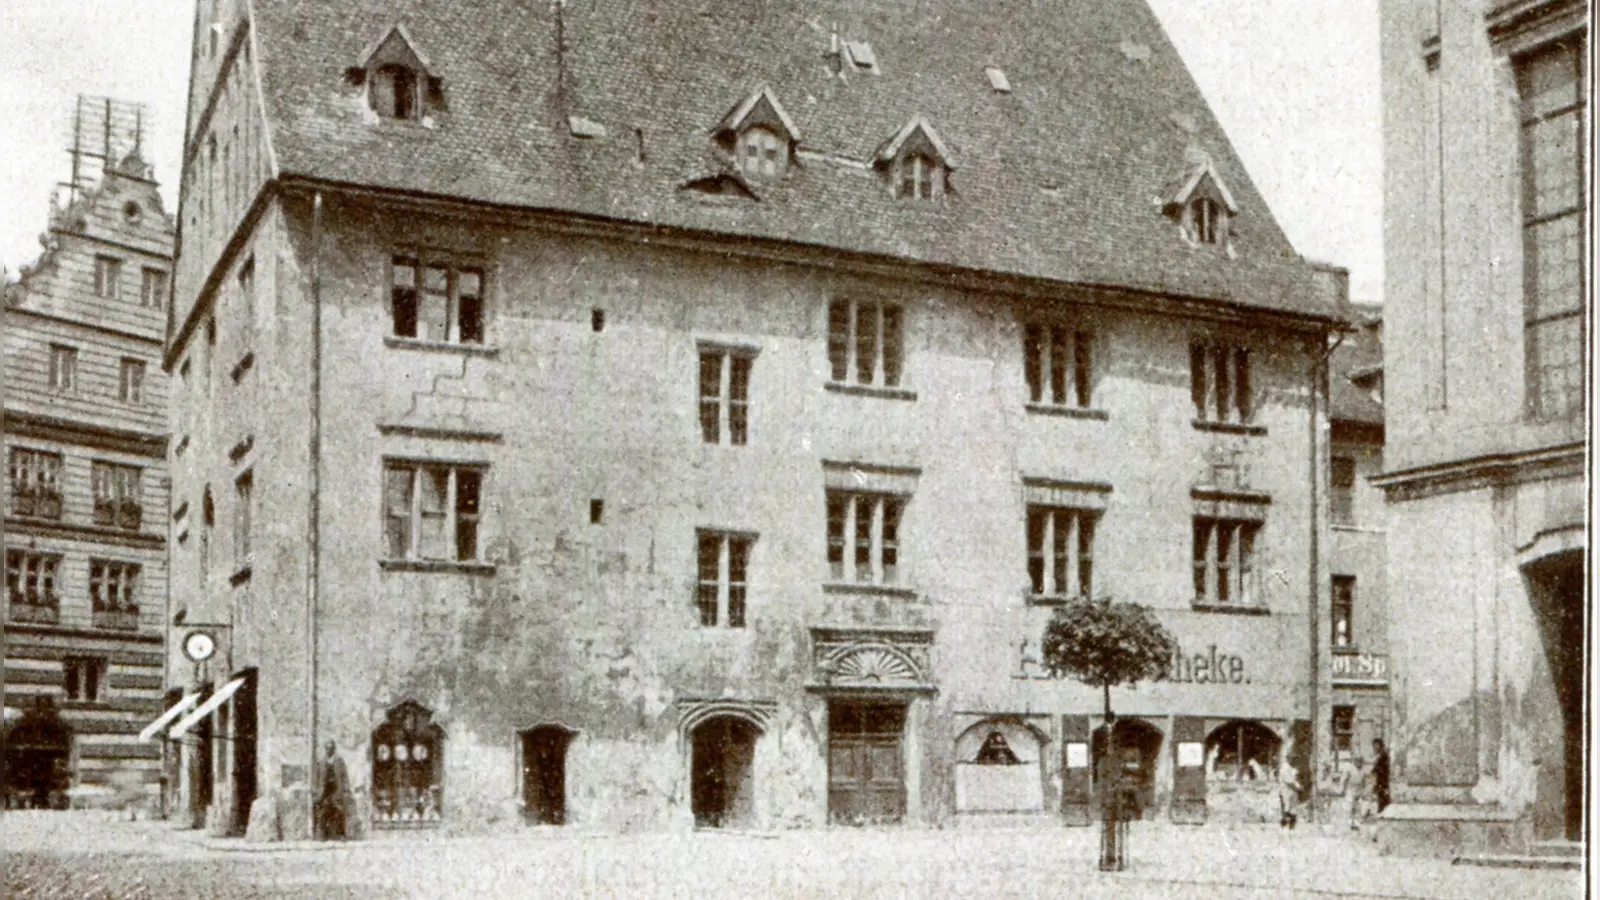 Das Stadthaus am heutigen Martin-Luther-Platz auf einer historischen Aufnahme: Die im Erdgeschoss beheimatete Hofapotheke ist auf der rechten Seite noch deutlich zu sehen. (Repro: Alexander Biernoth)